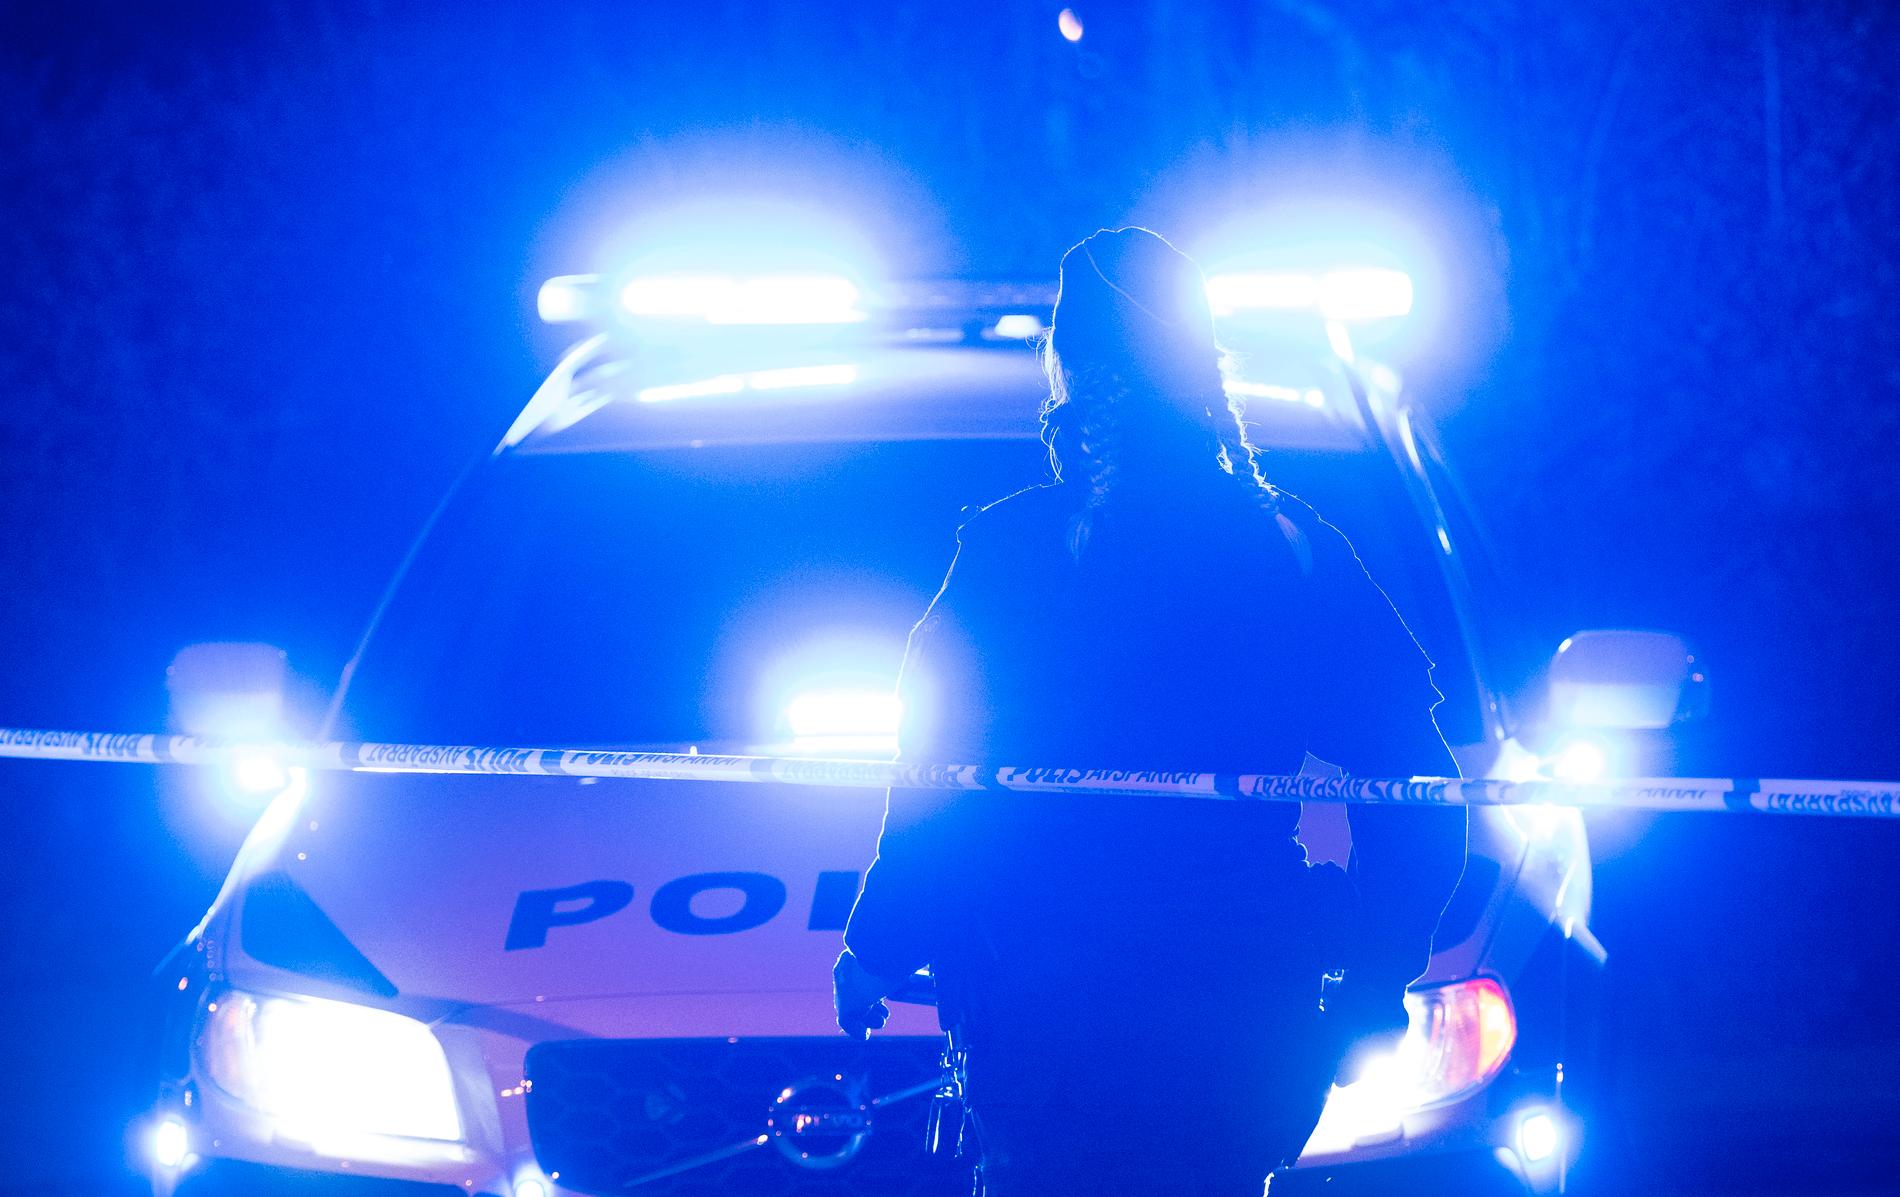 En man i 25-årsåldern blev på valborgsmässoafton så svårt misshandlad i Kalmar att han senare avled. Arkivbild.